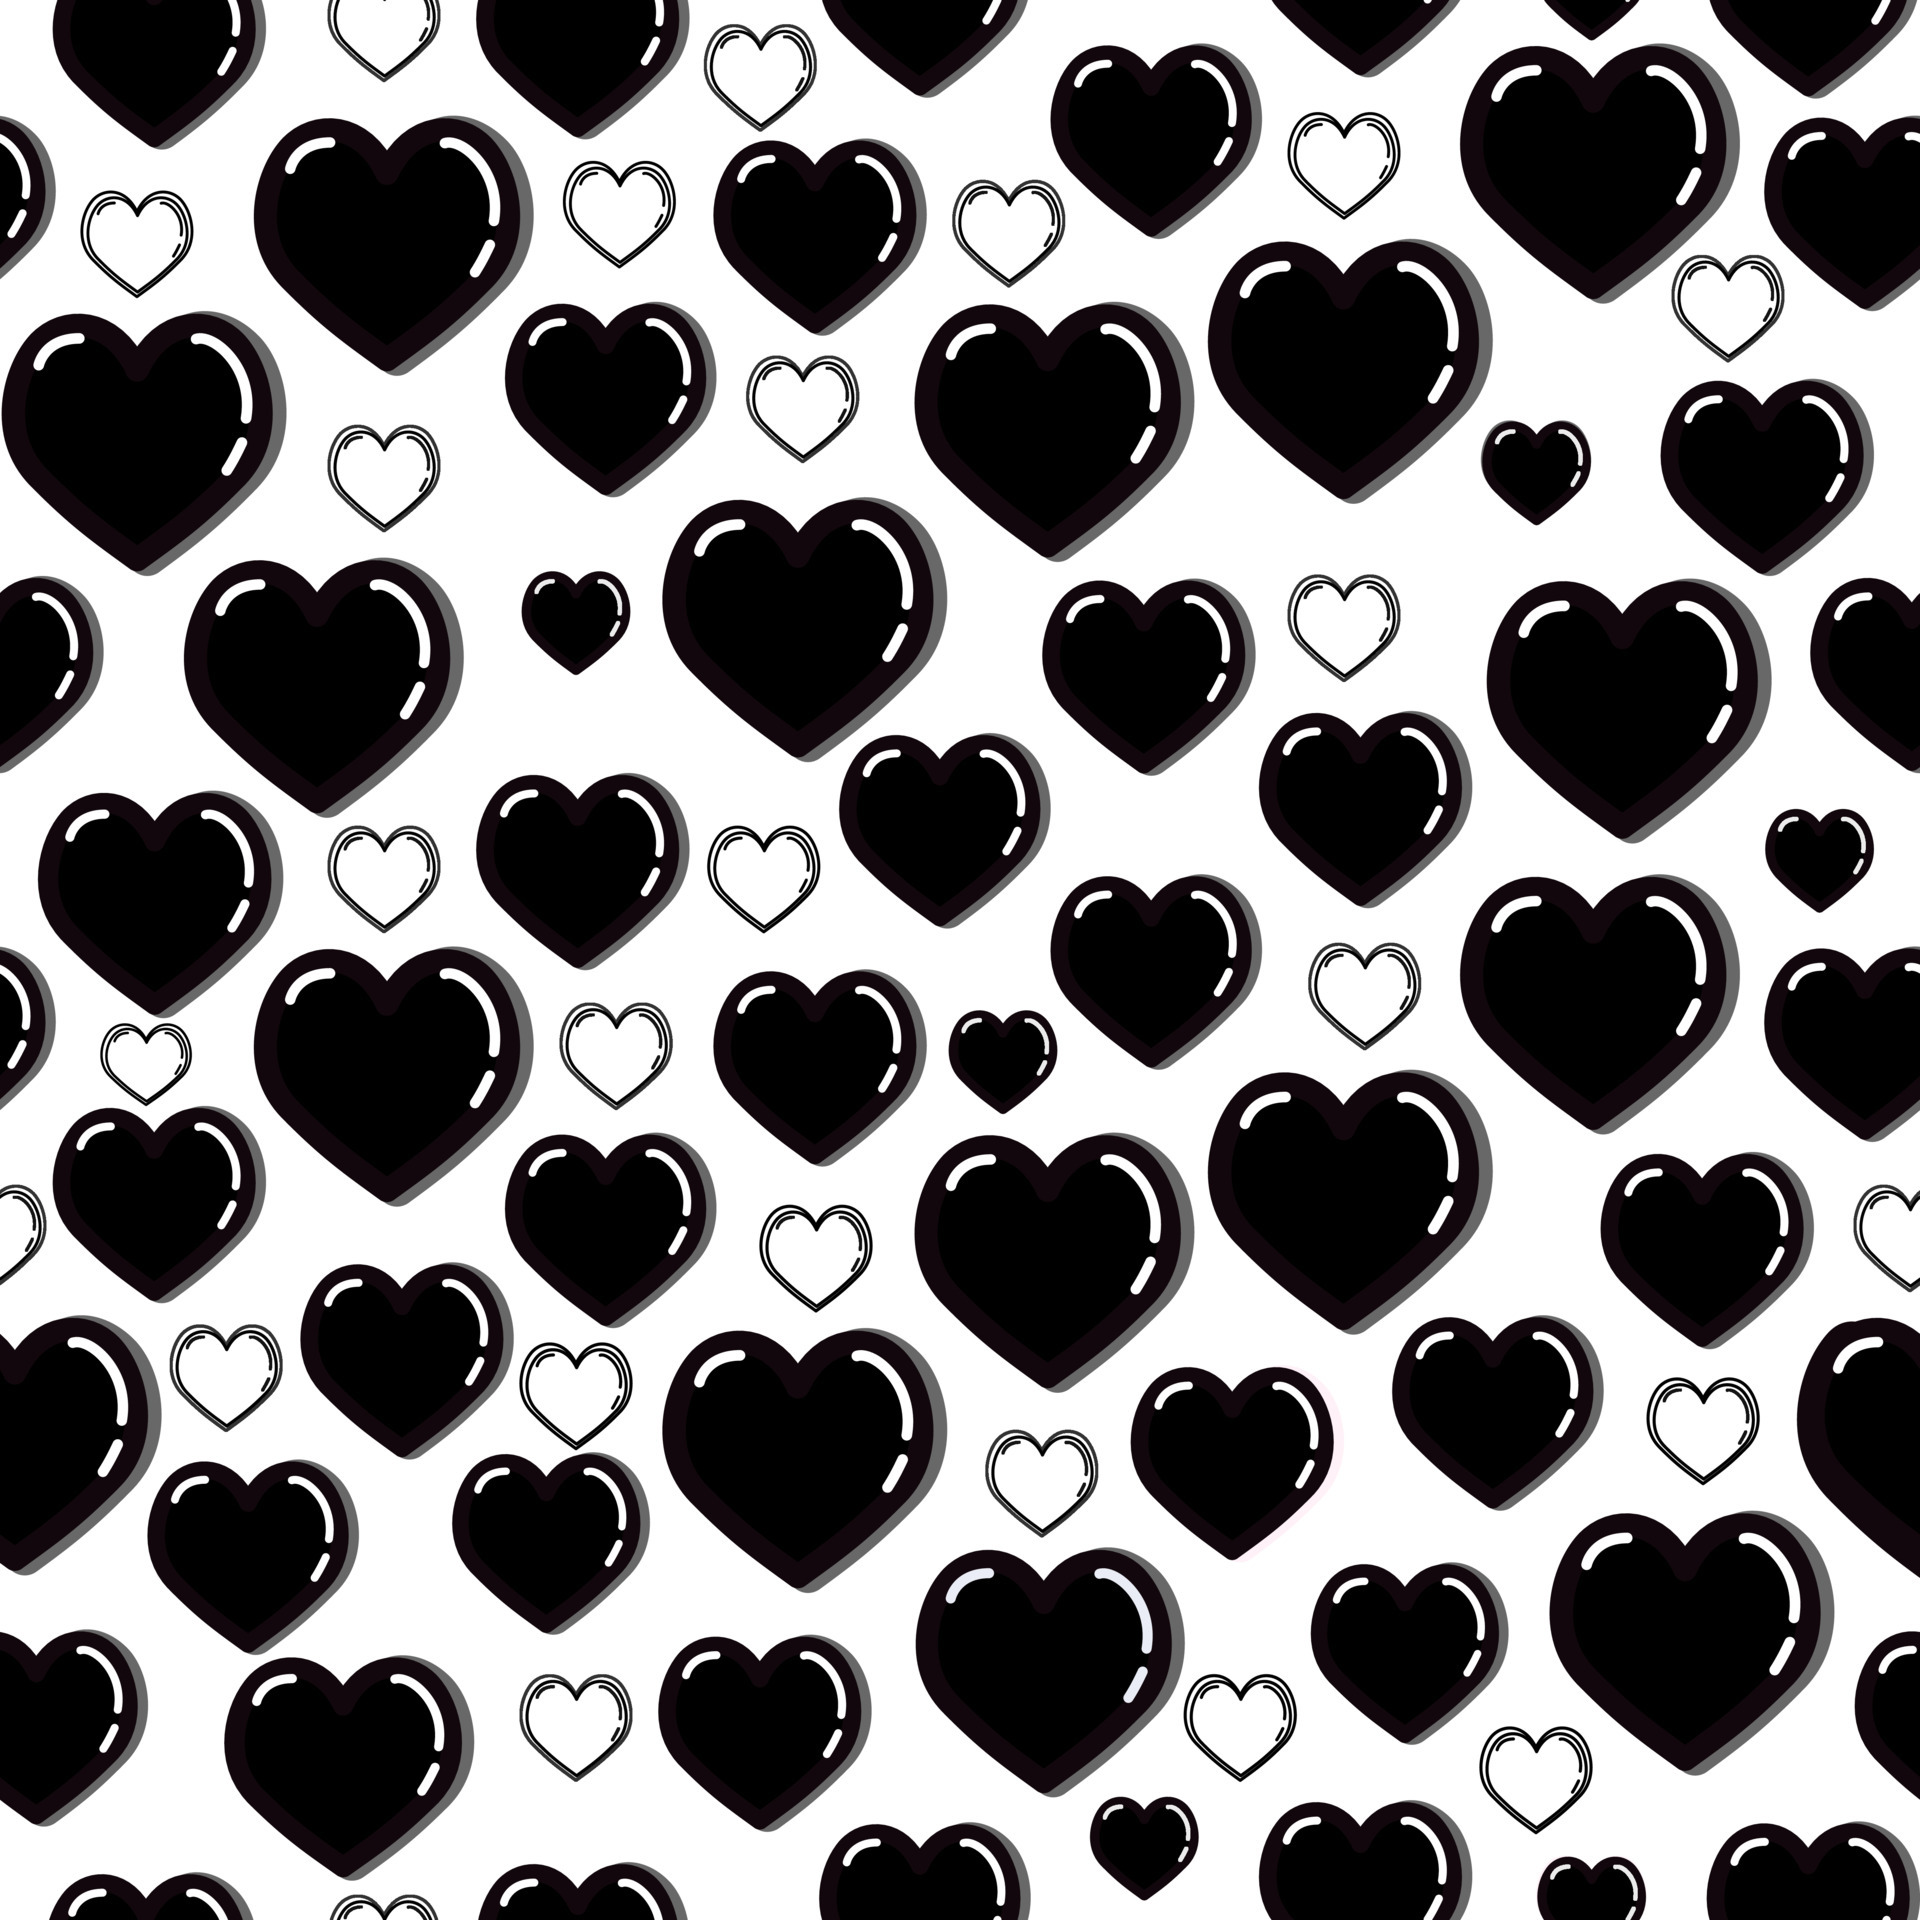 46 Red and Black Heart Wallpaper  WallpaperSafari